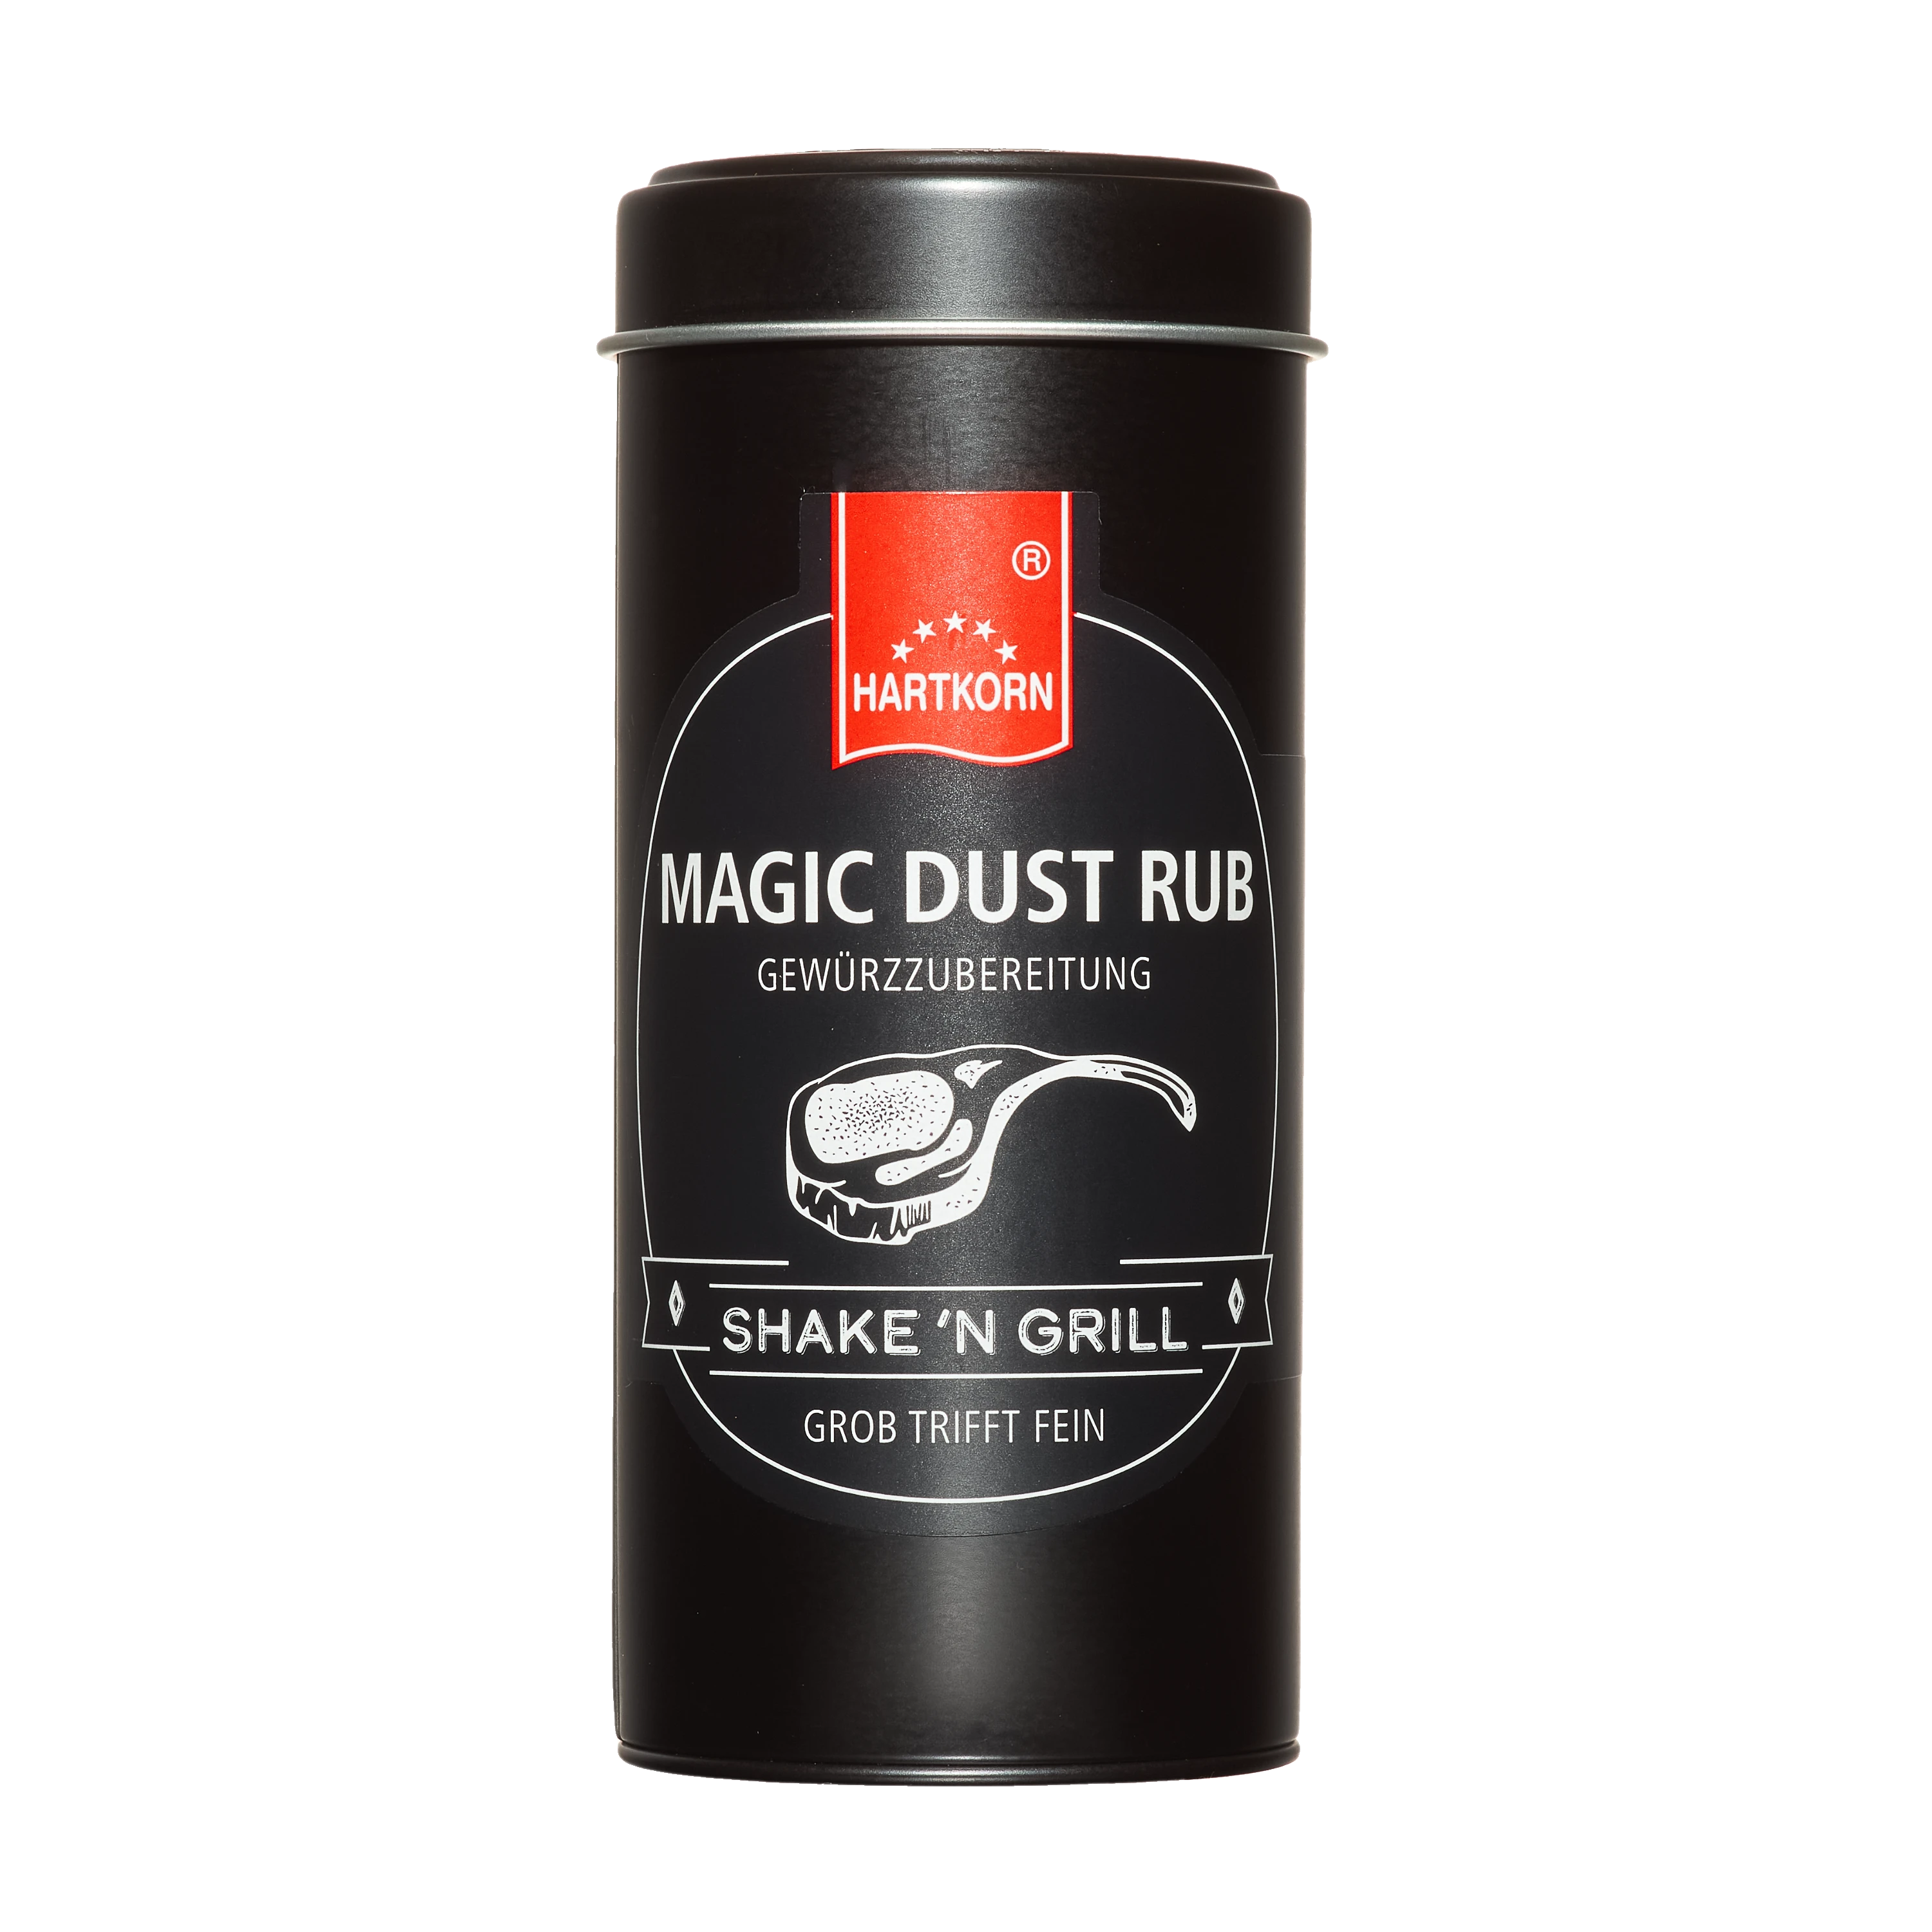 Hartkorn Magic Dust Rub 1